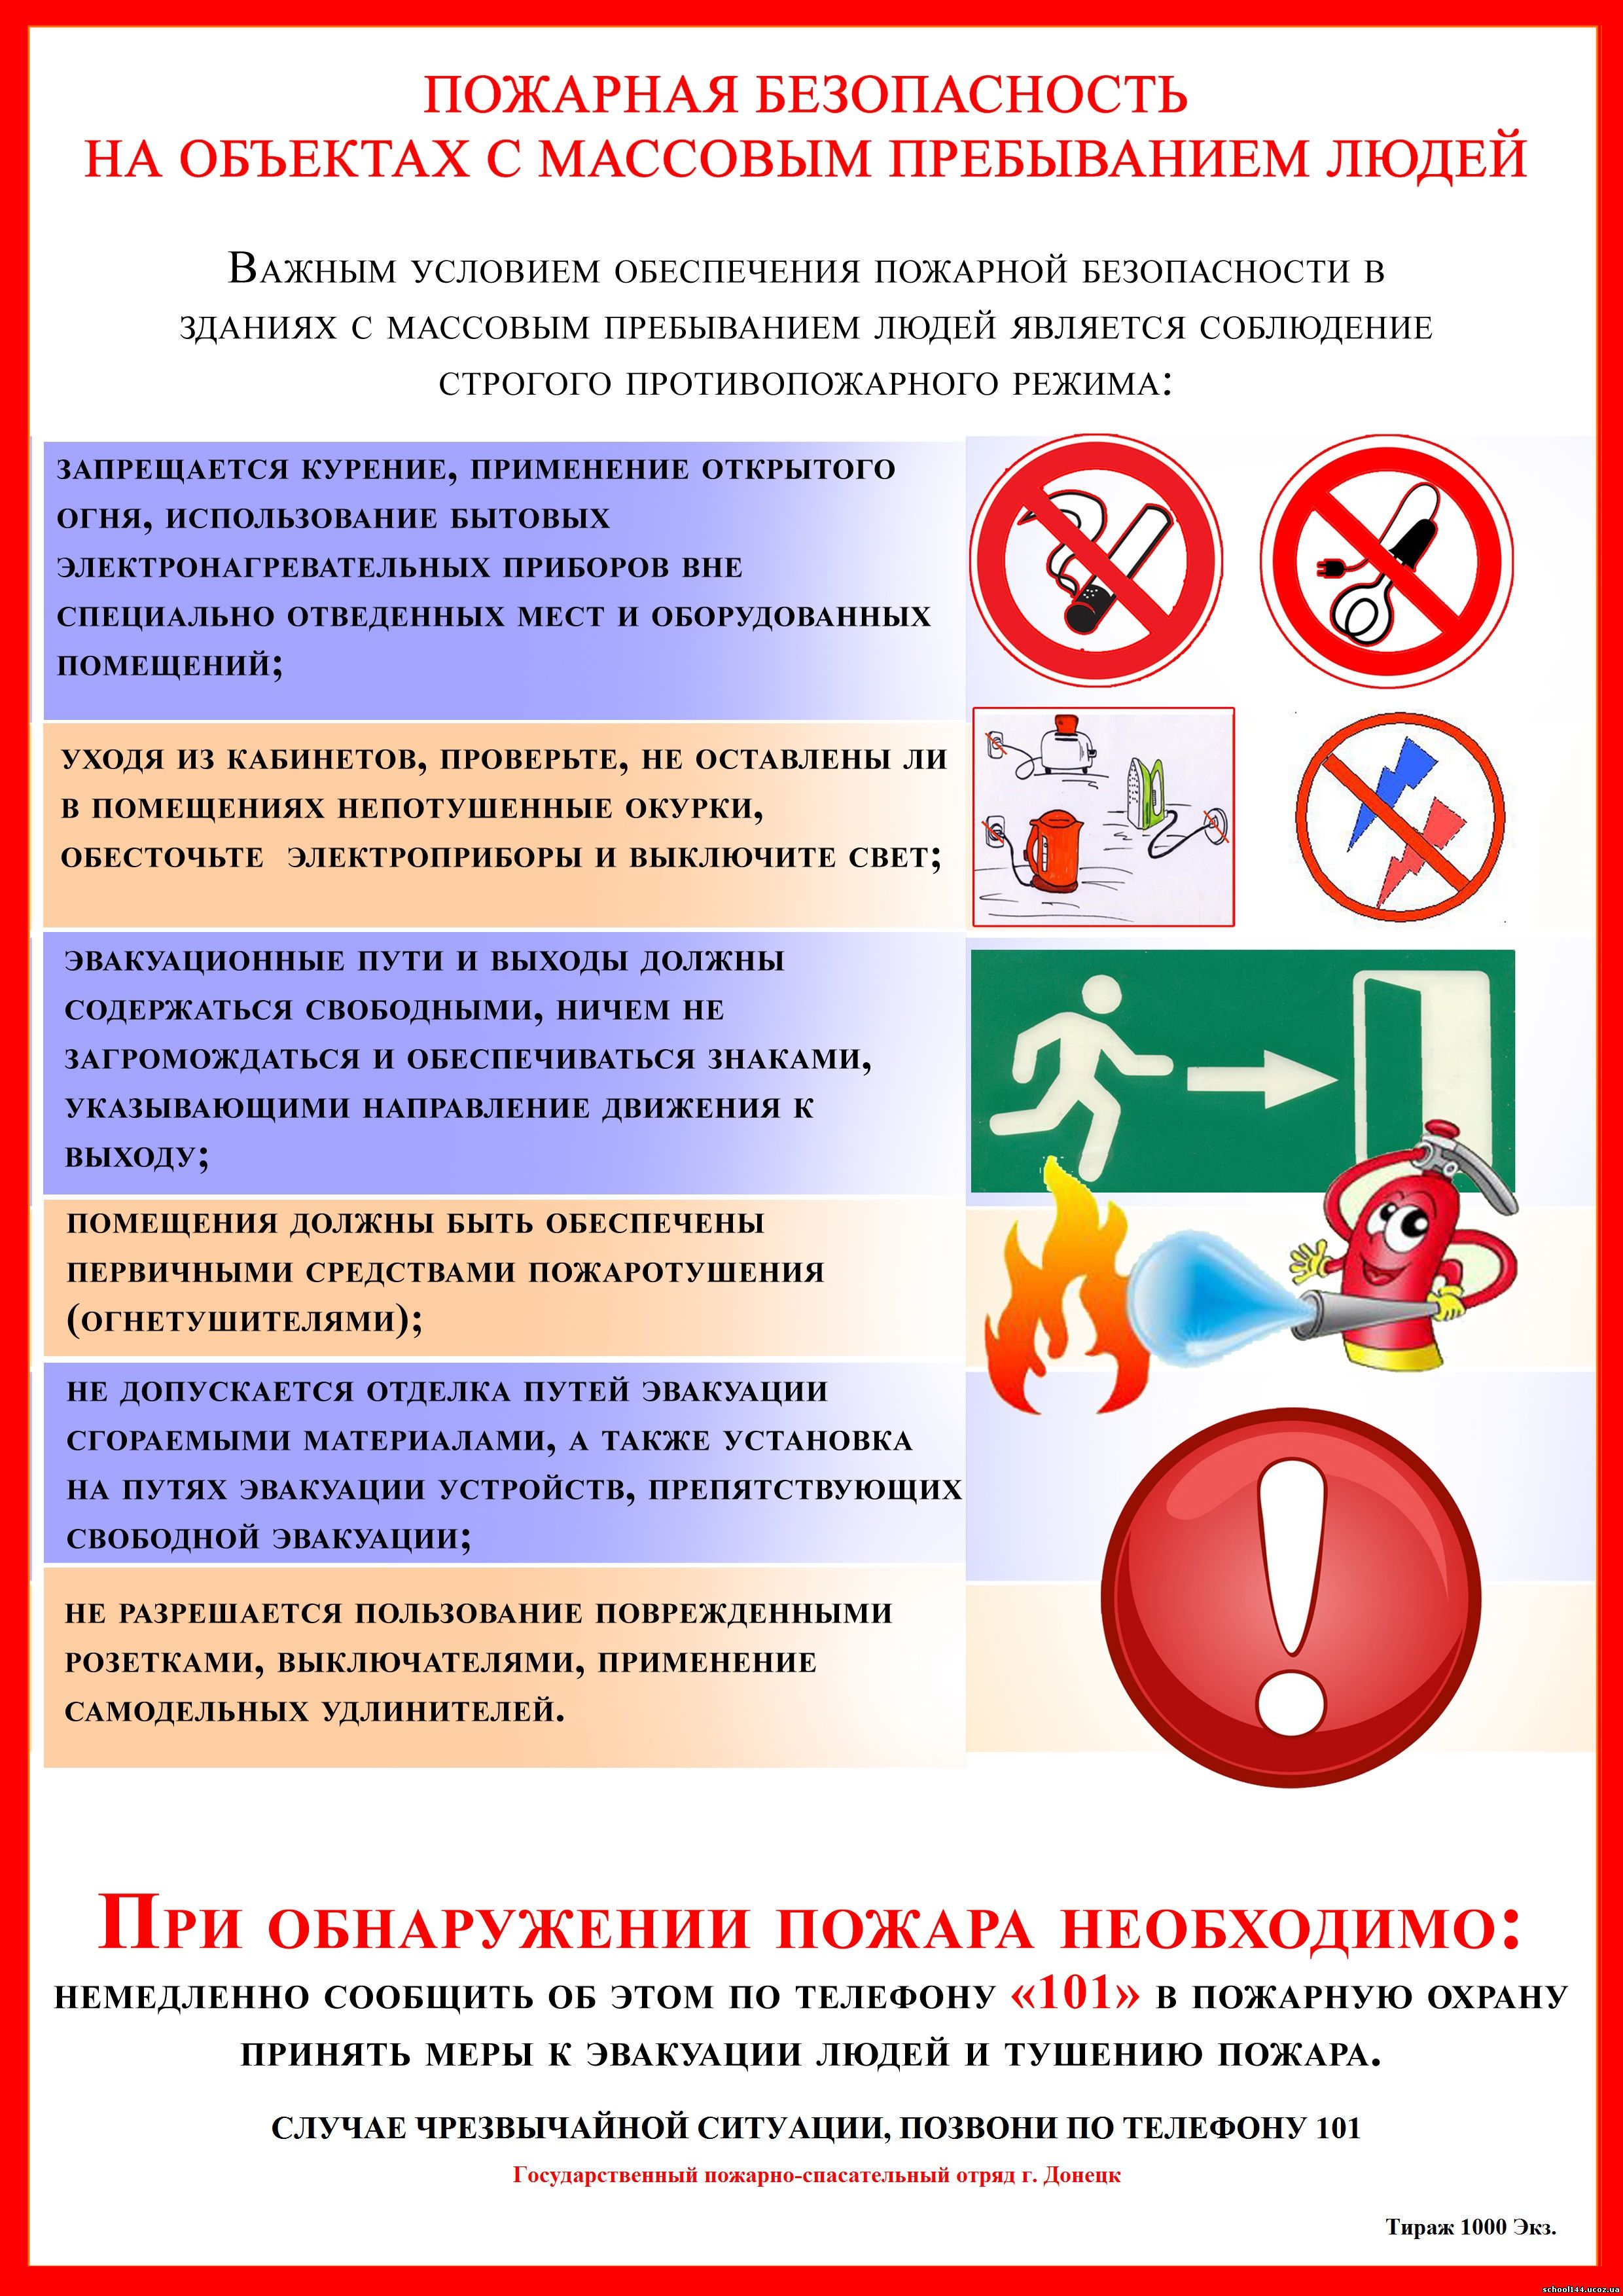 http://school144.ucoz.ua/pozharnaja_bezopasnost-massovoe_skoplenie.jpg